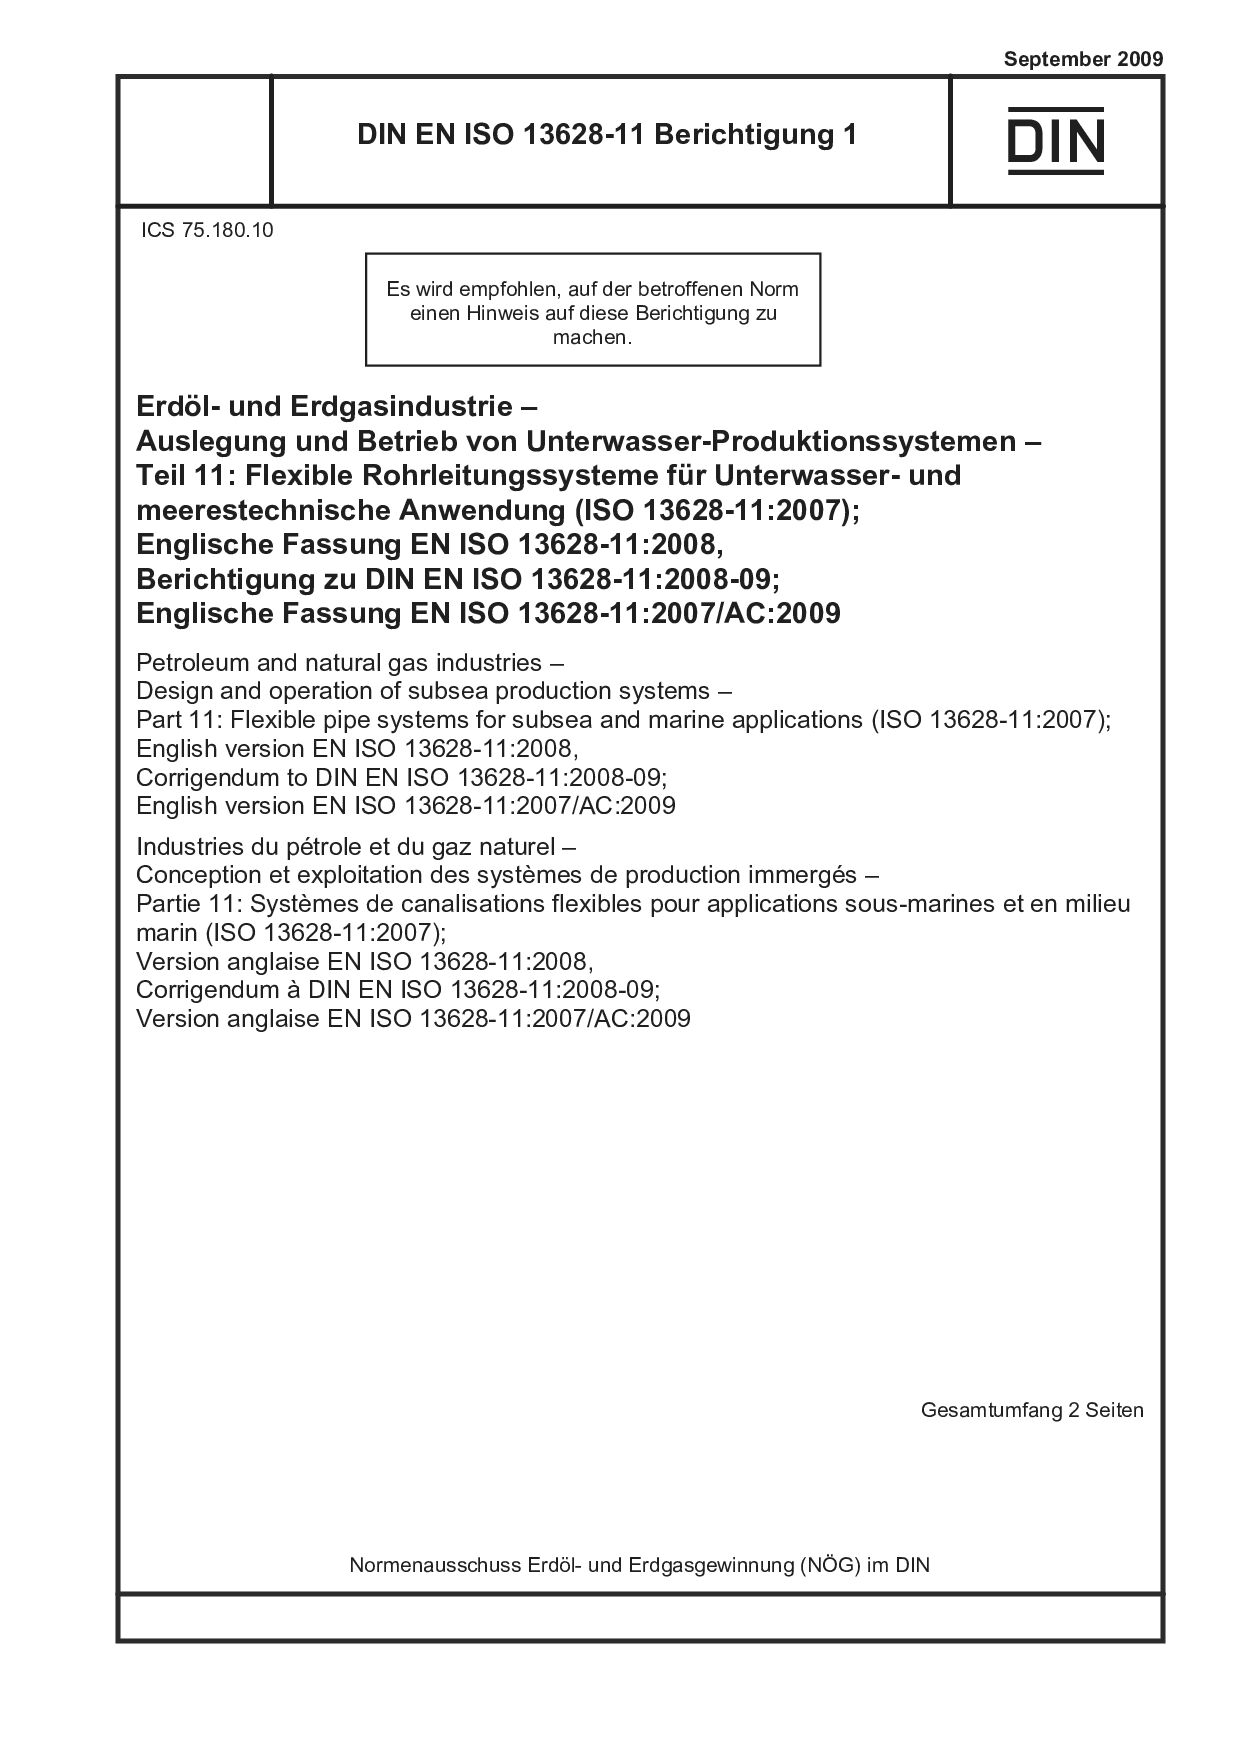 DIN EN ISO 13628-11 Berichtigung 1:2009